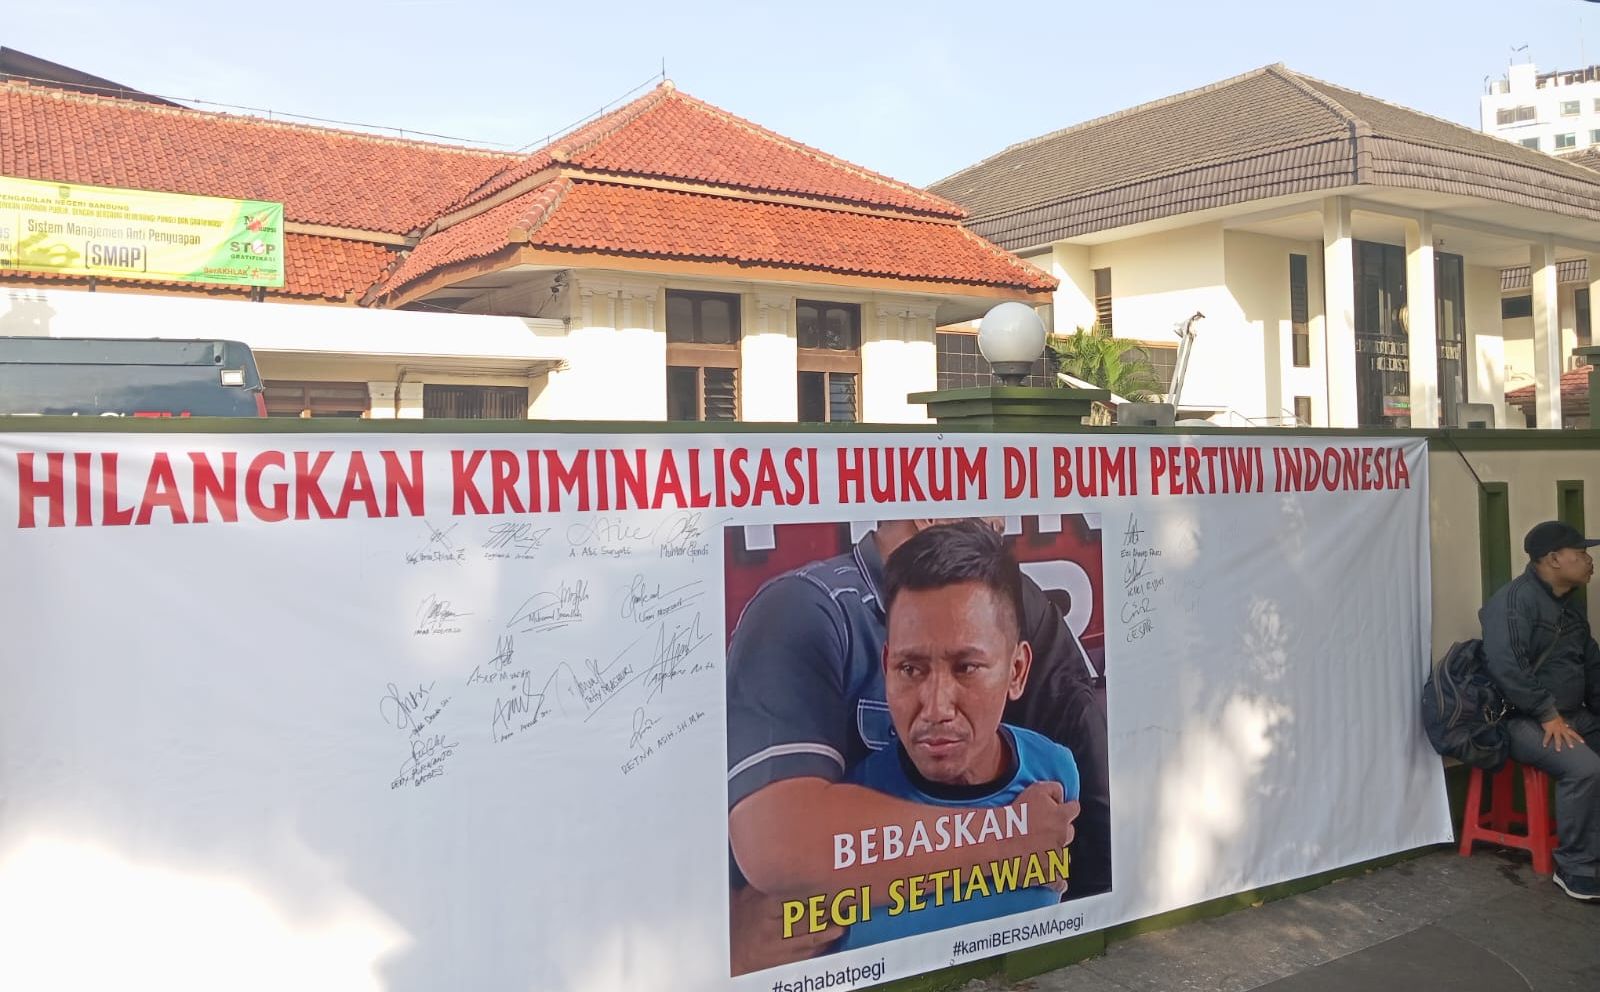 Sidang praperadilan Pegi Setiawan di Pengadilan Negeri Bandung ditunda selama sepekan.